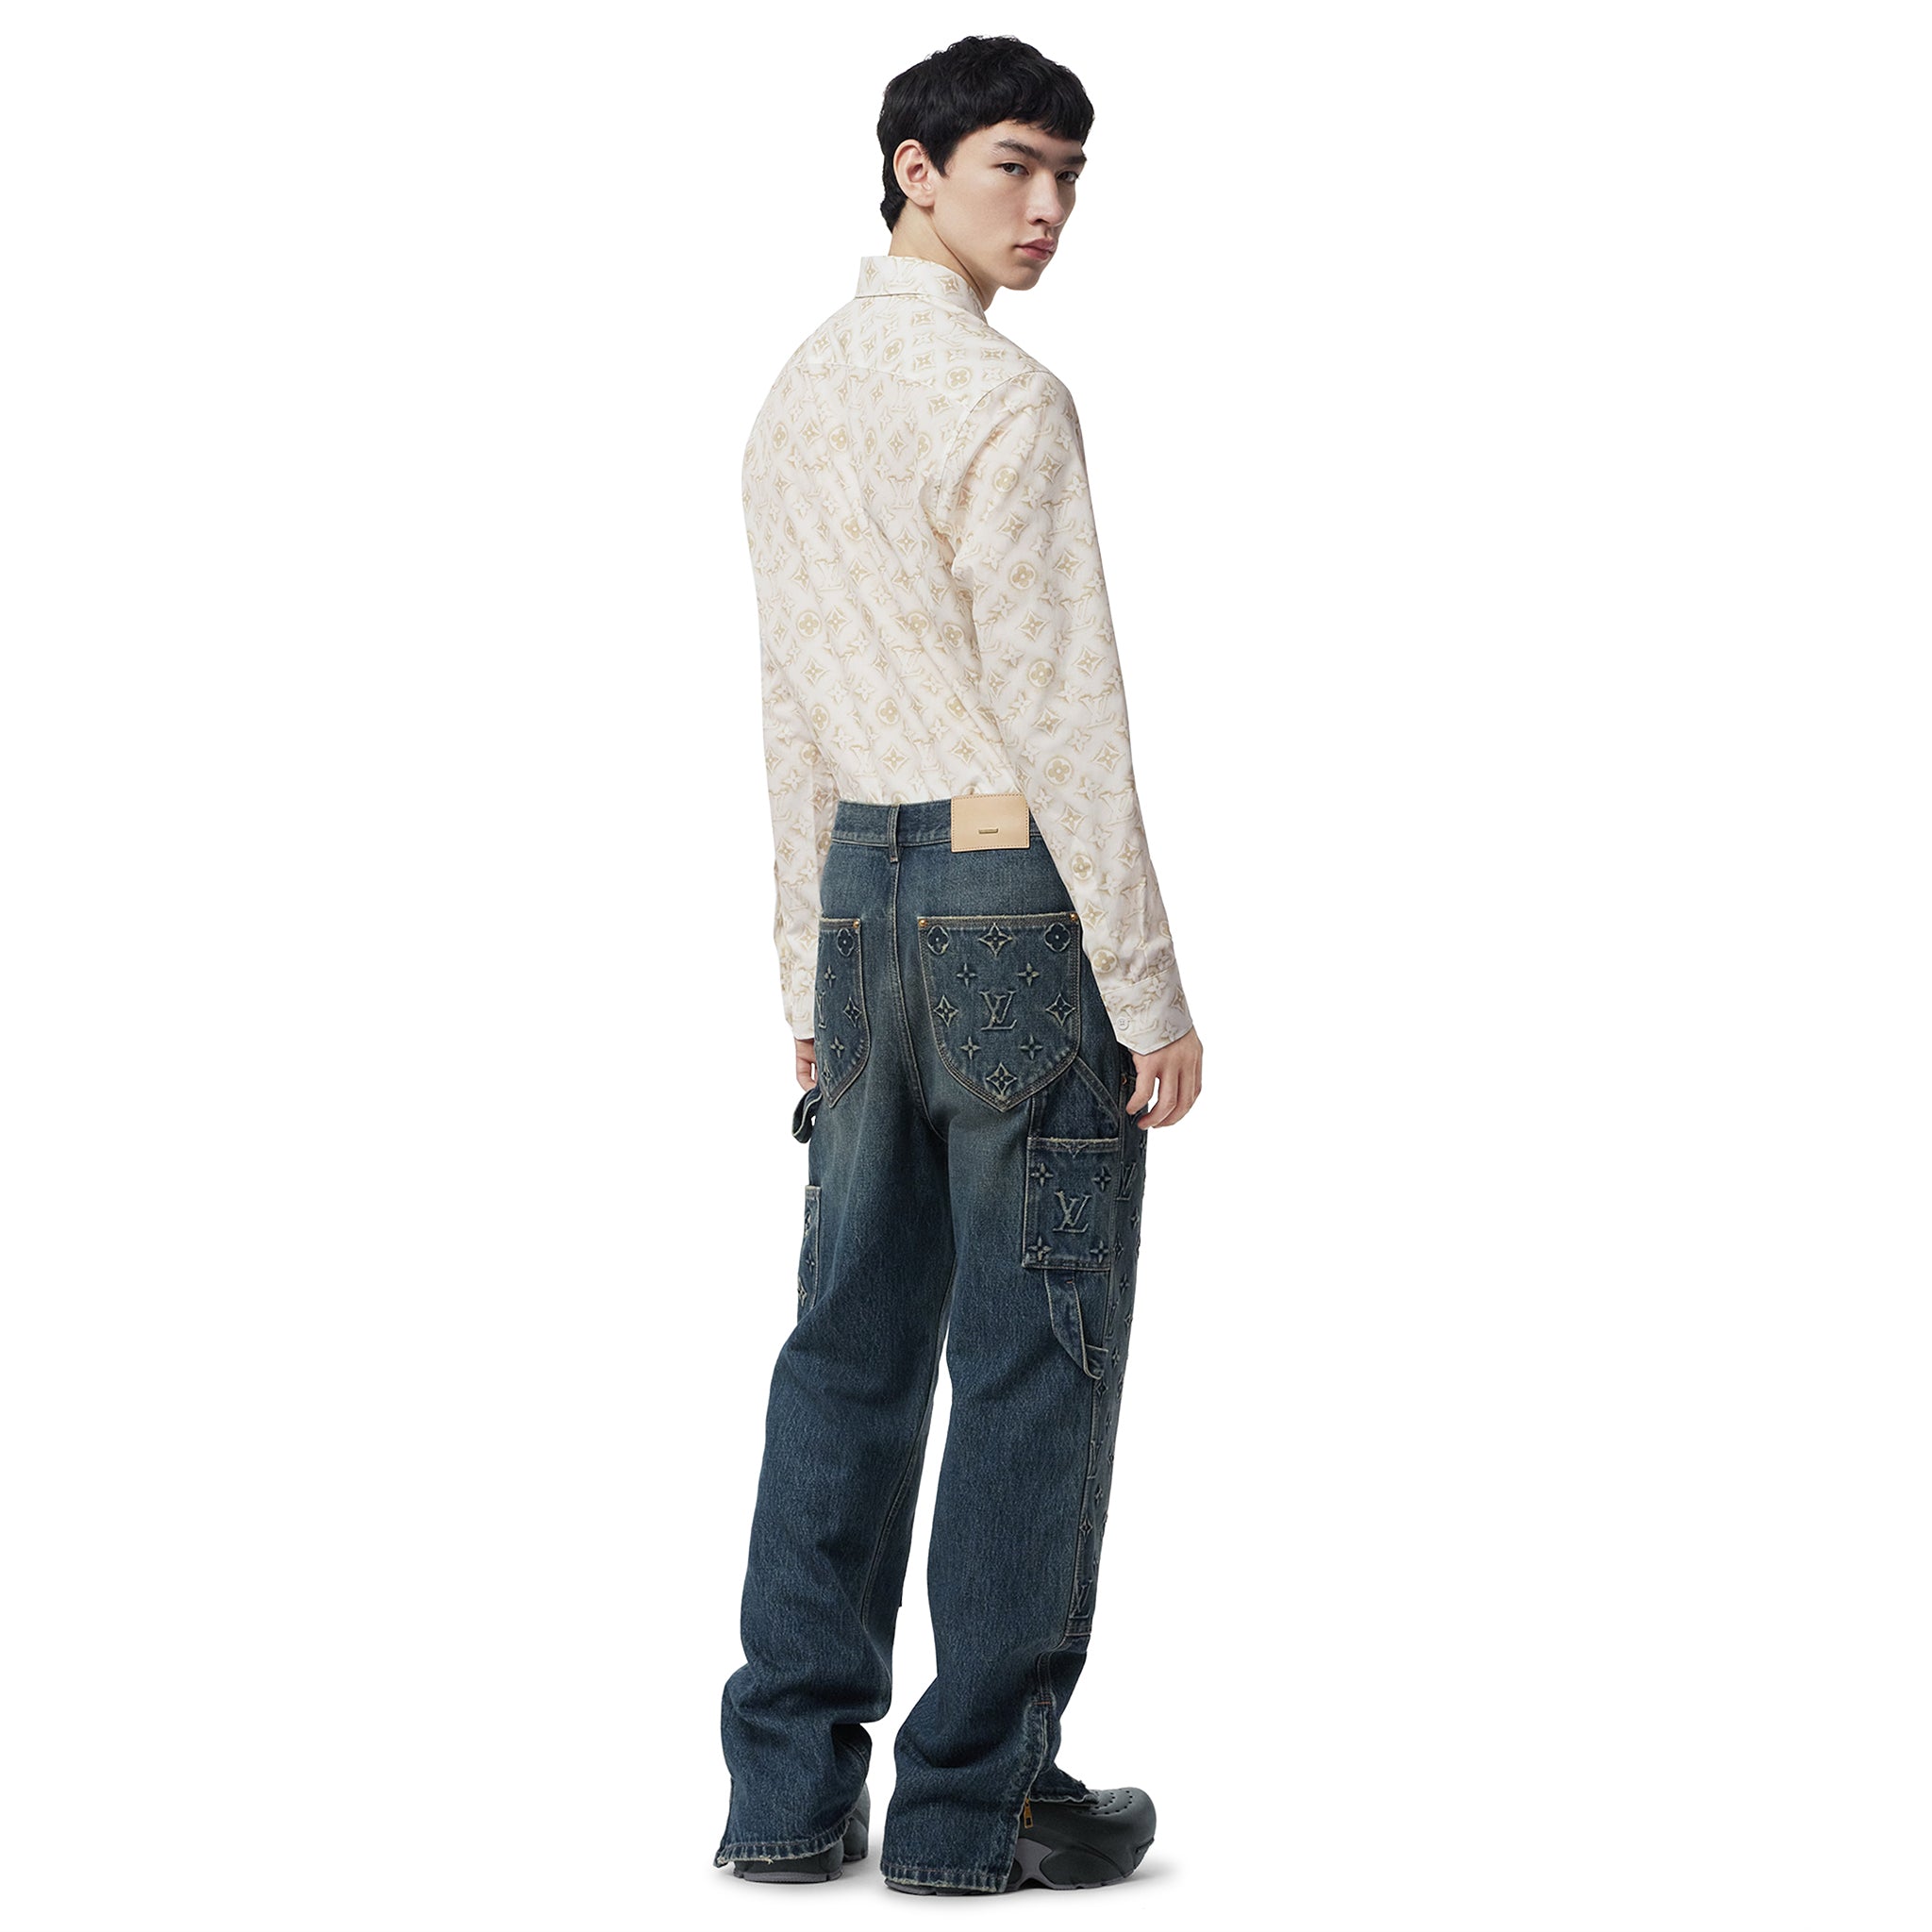 Back modelview of Louis Vuitton Monogram Long-Sleeved Cotton Shirt White NVPROD4330266V